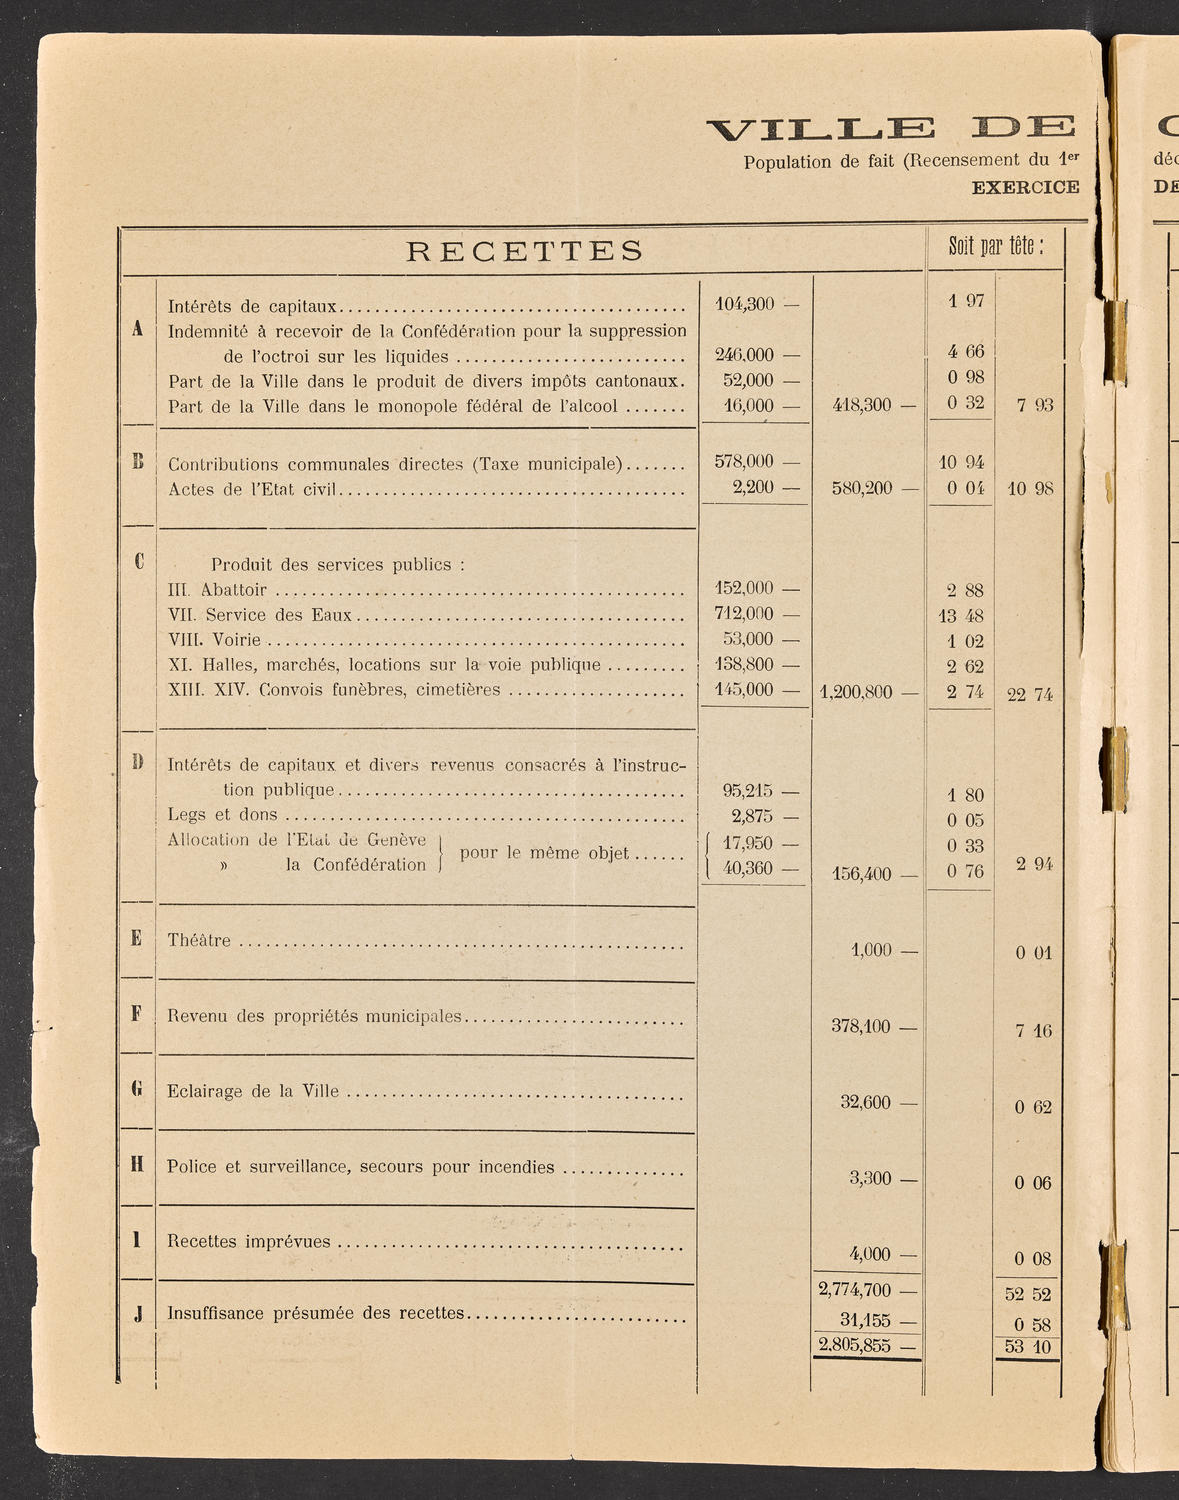 Budget de la Ville de Genève - Exercise de 1893, page 2 of 32